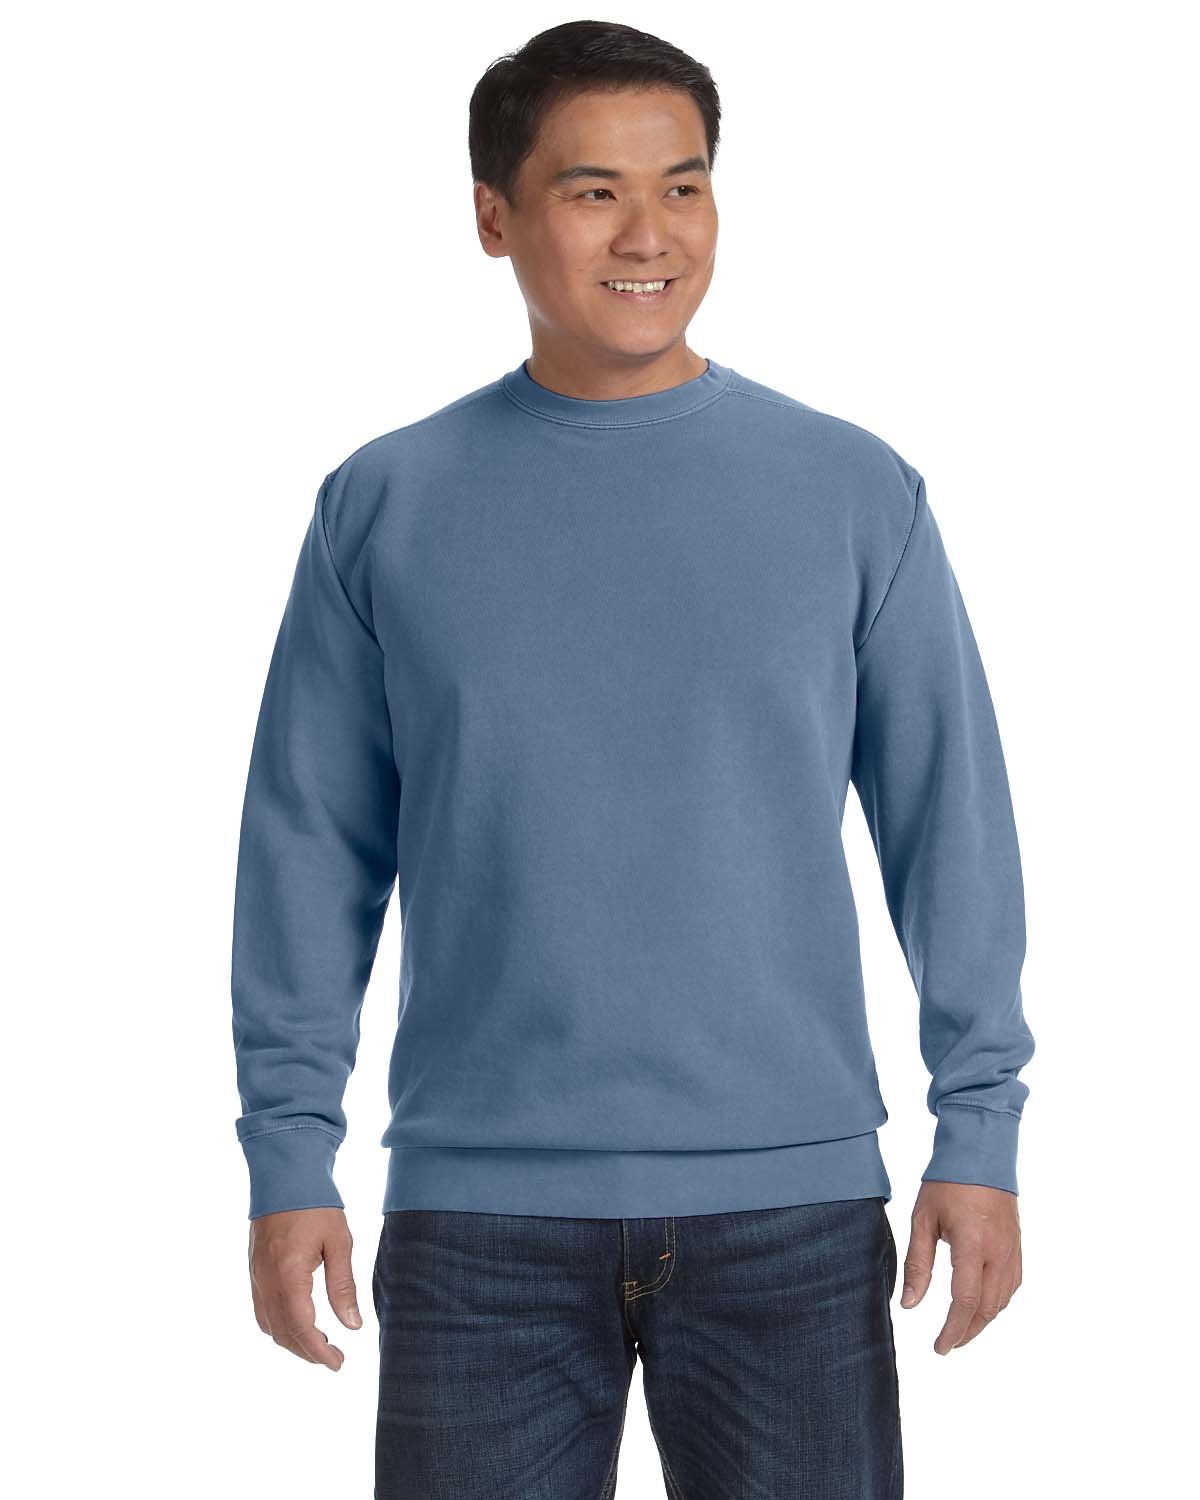 Adult Crewneck Sweatshirt-